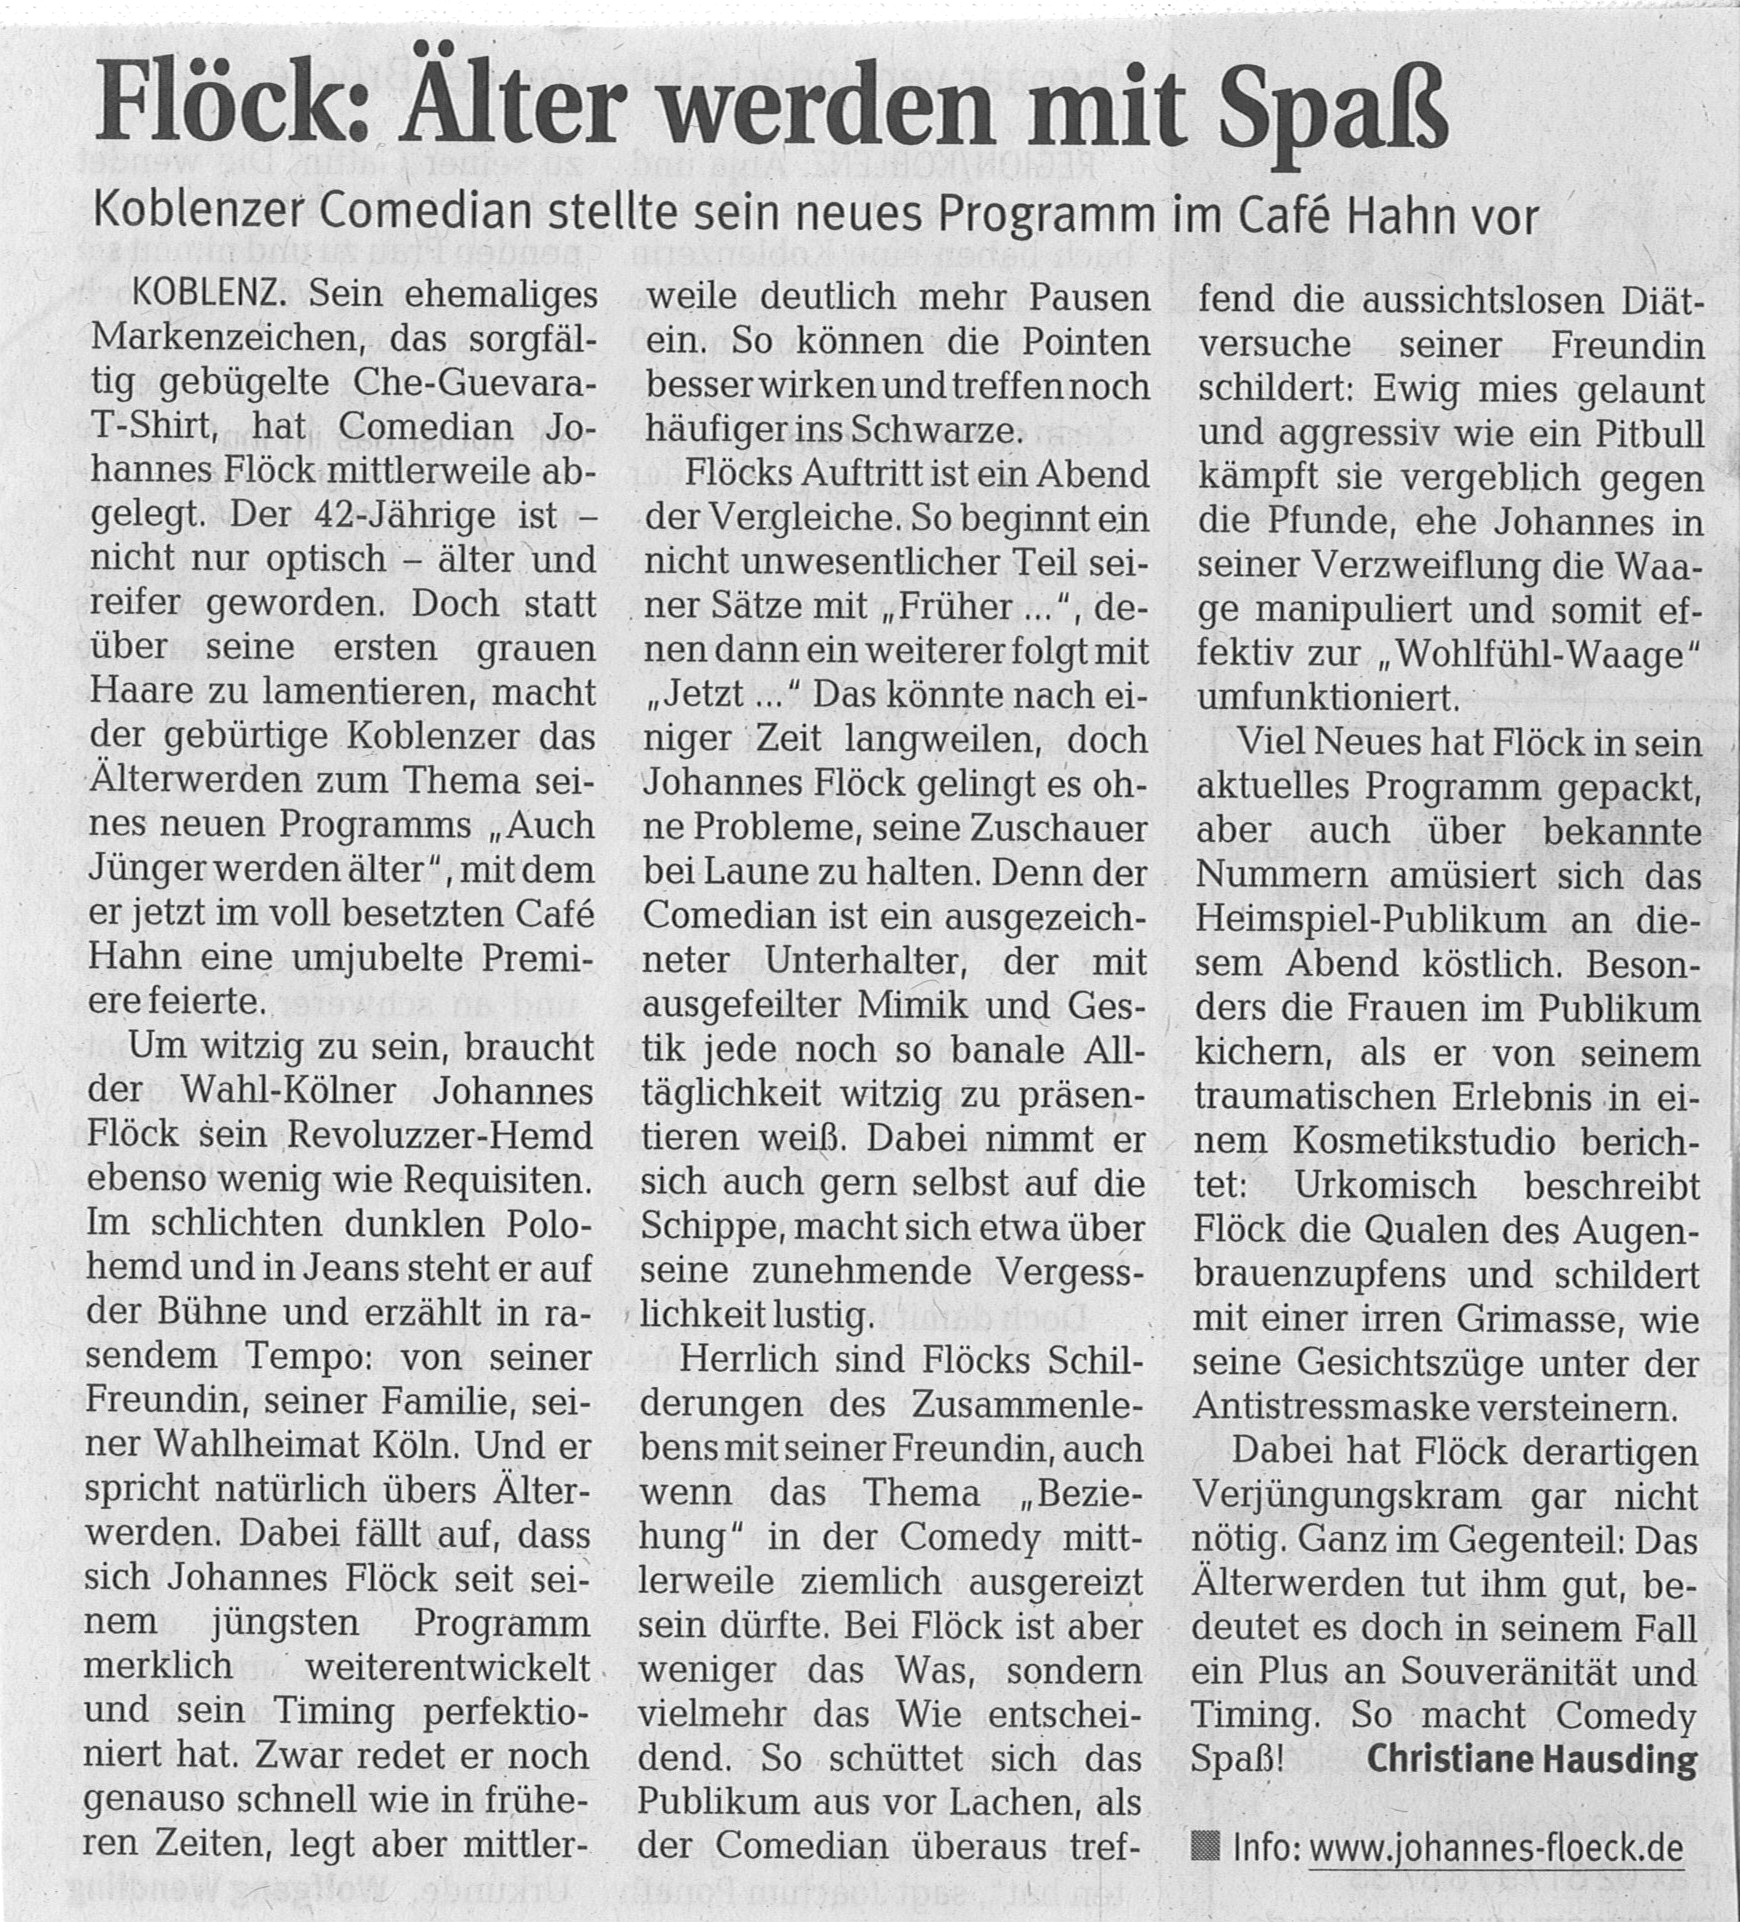 Rhein-Zeitungsartikel über meine Premiere: AUCH JÜNGER WERDEN ÄLTER